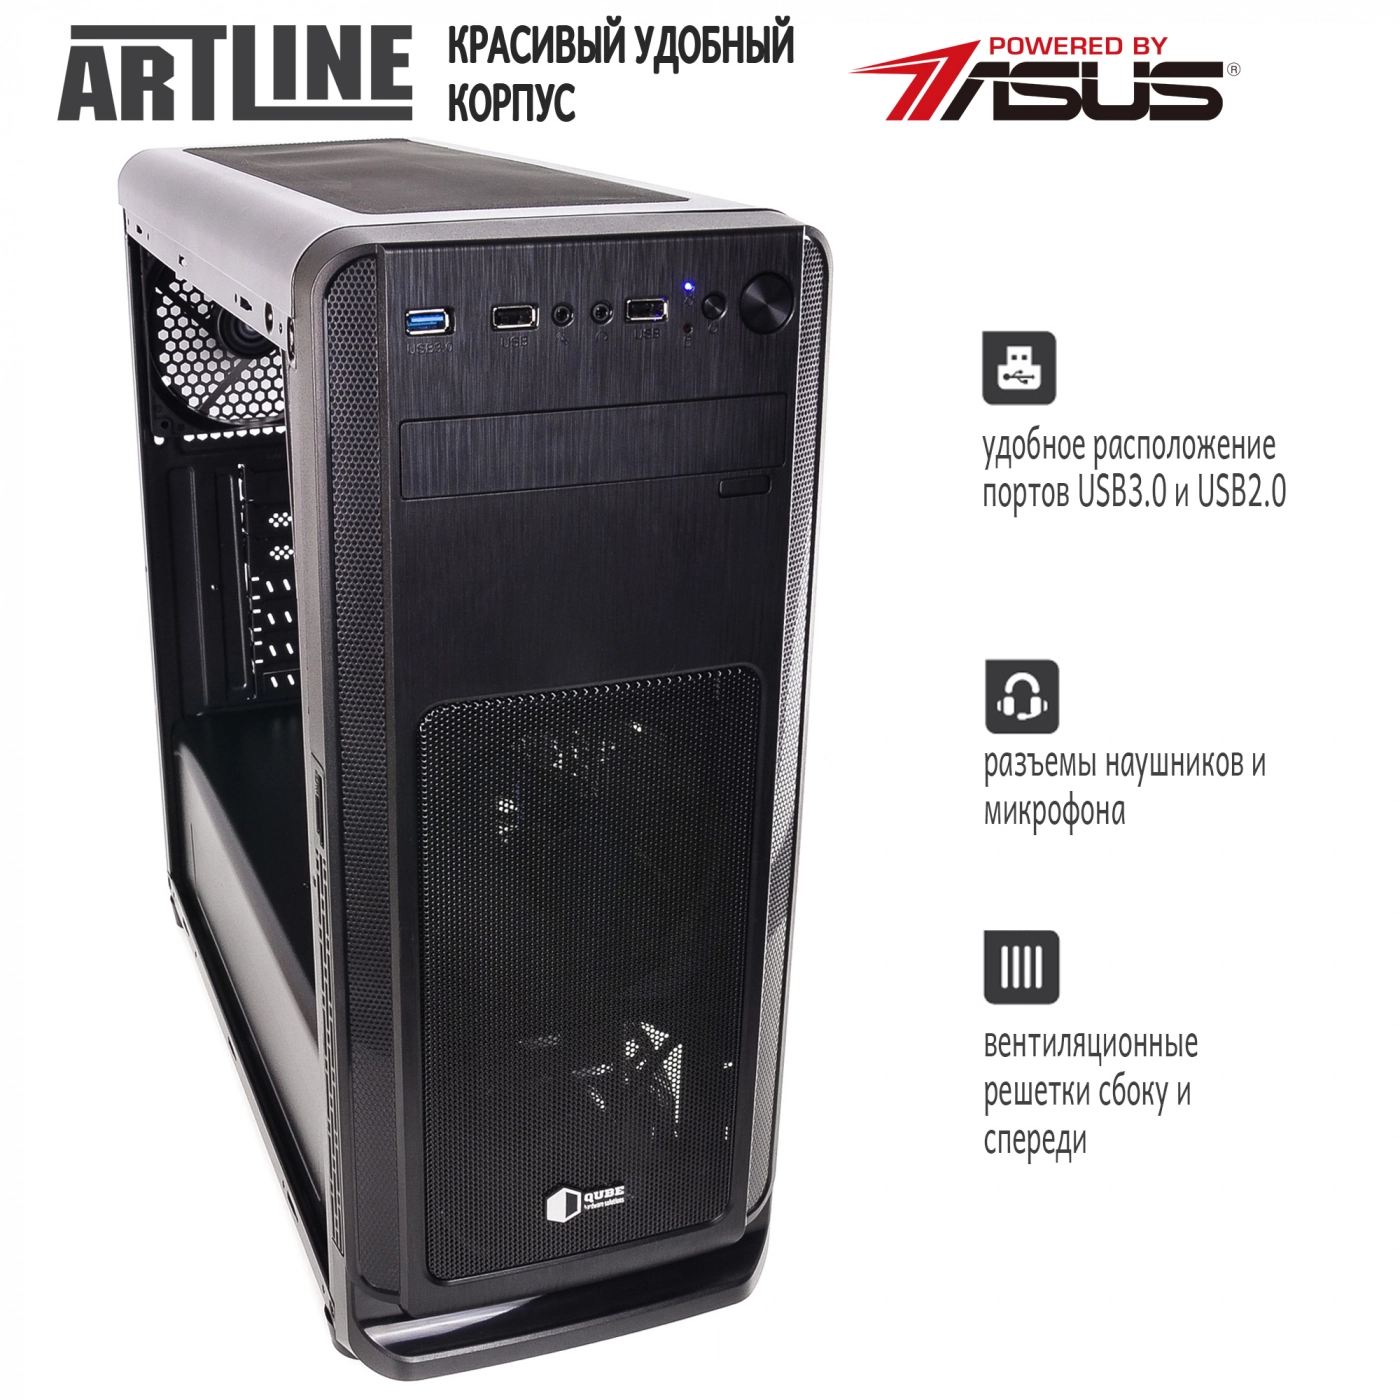 Купить Сервер ARTLINE Business T25v06 - фото 5